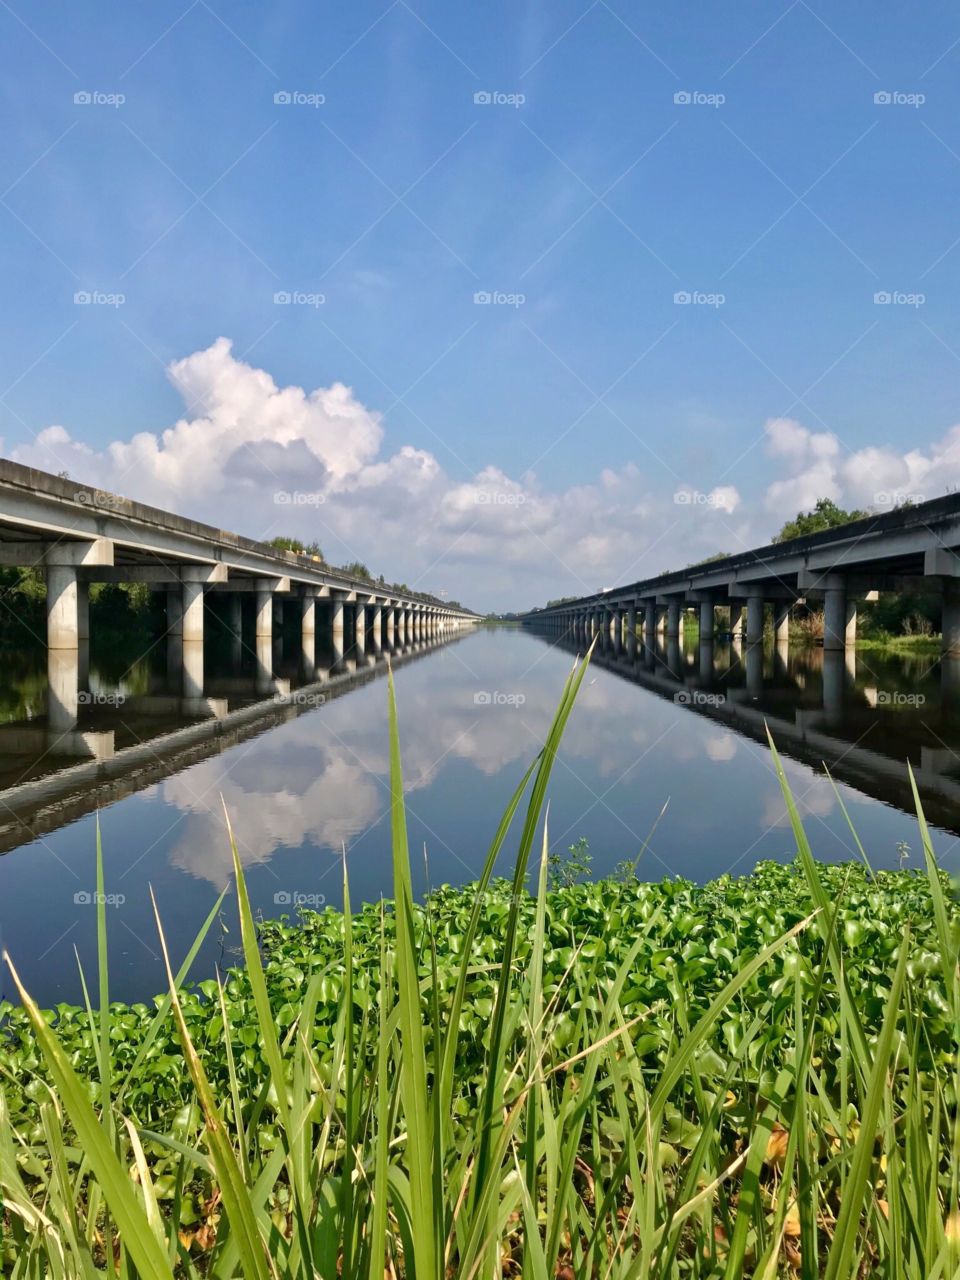 I-55 bridge through swamp